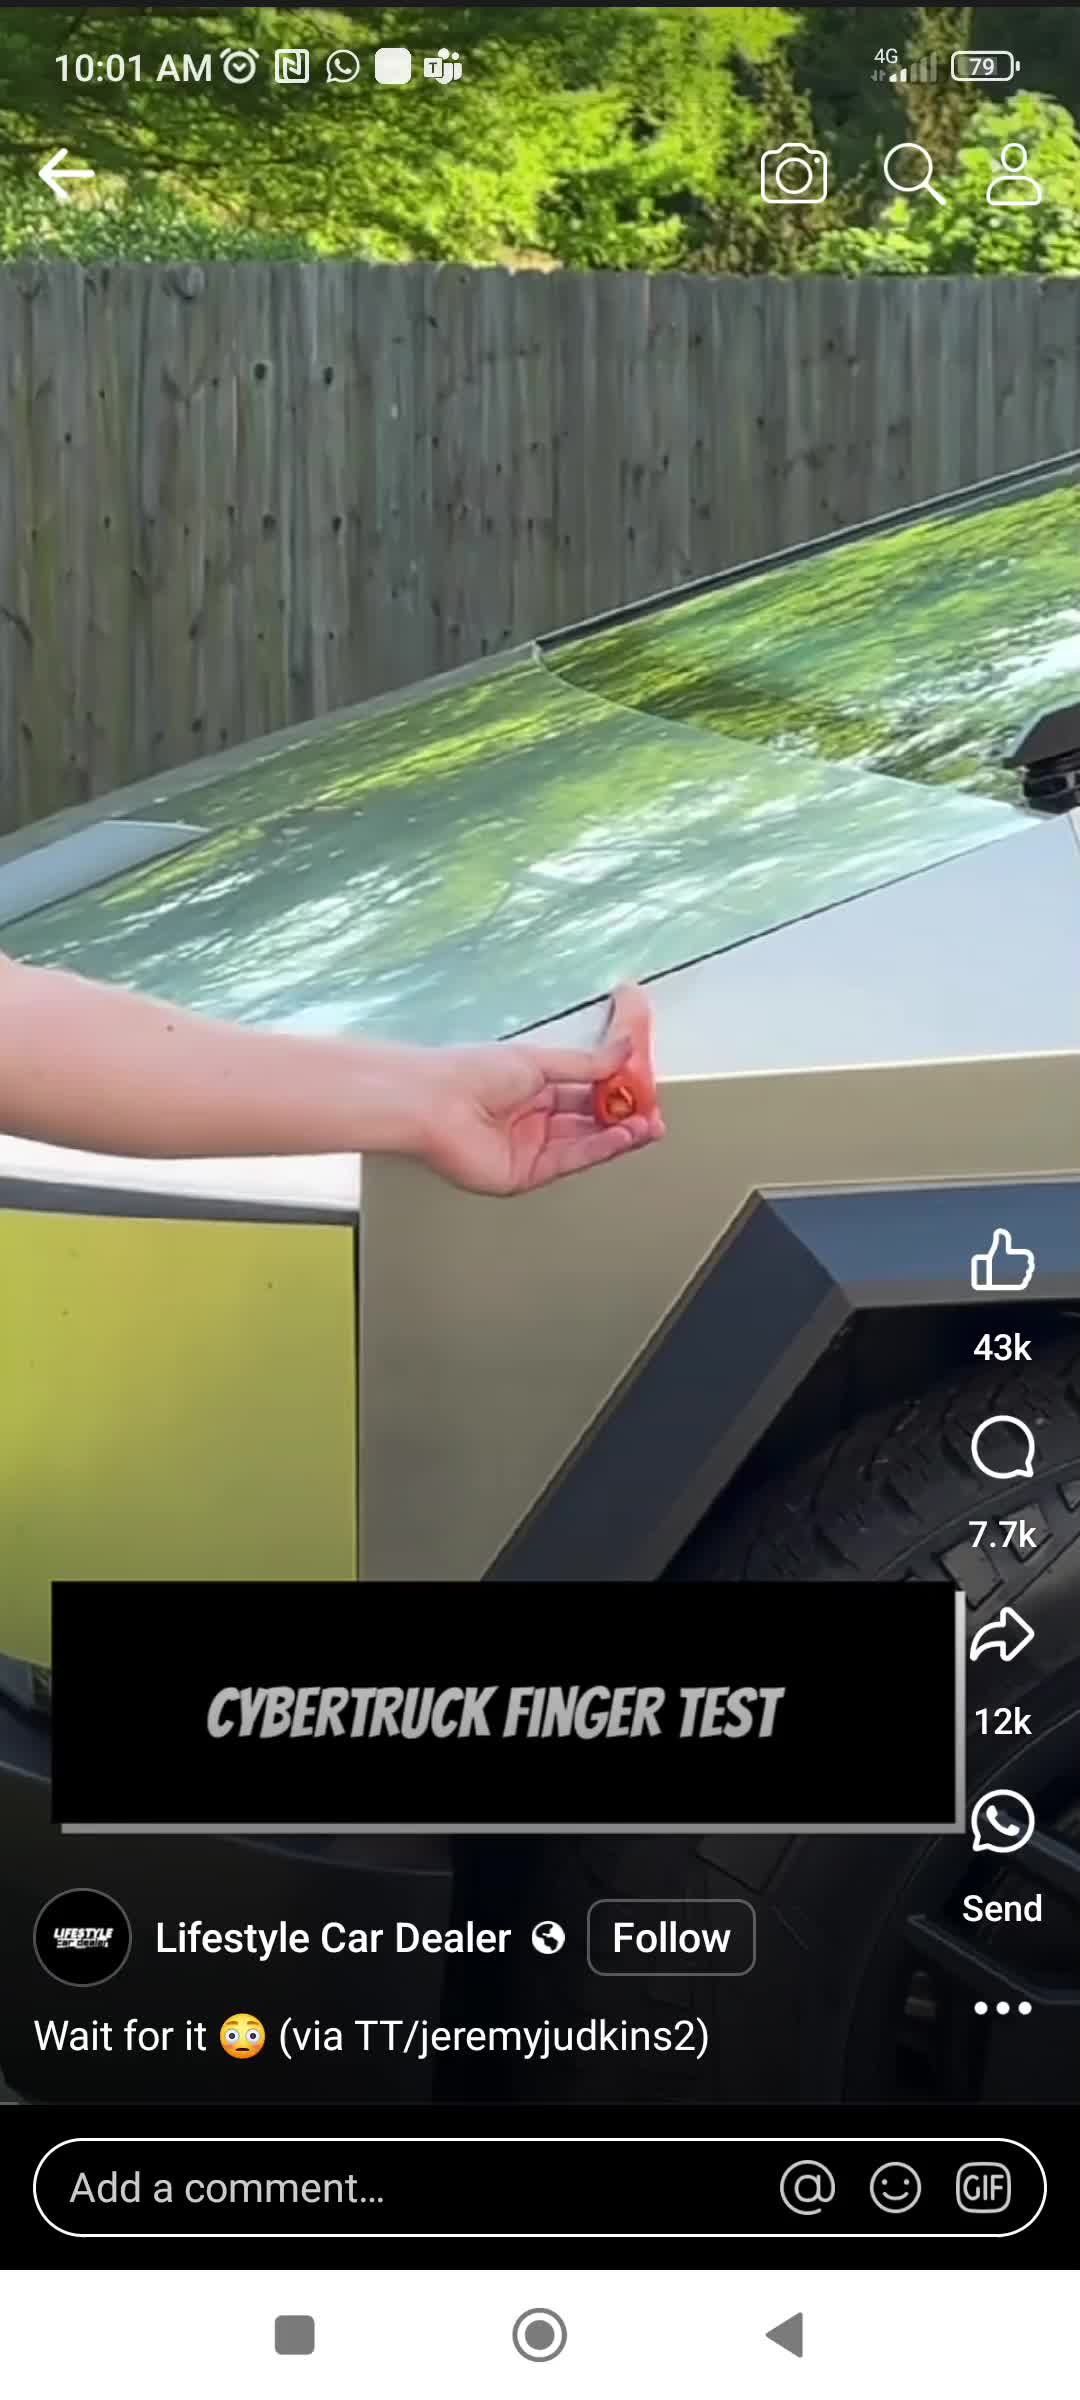 在特斯拉的网络卡车上看到这个视频测试失败了真滑稽